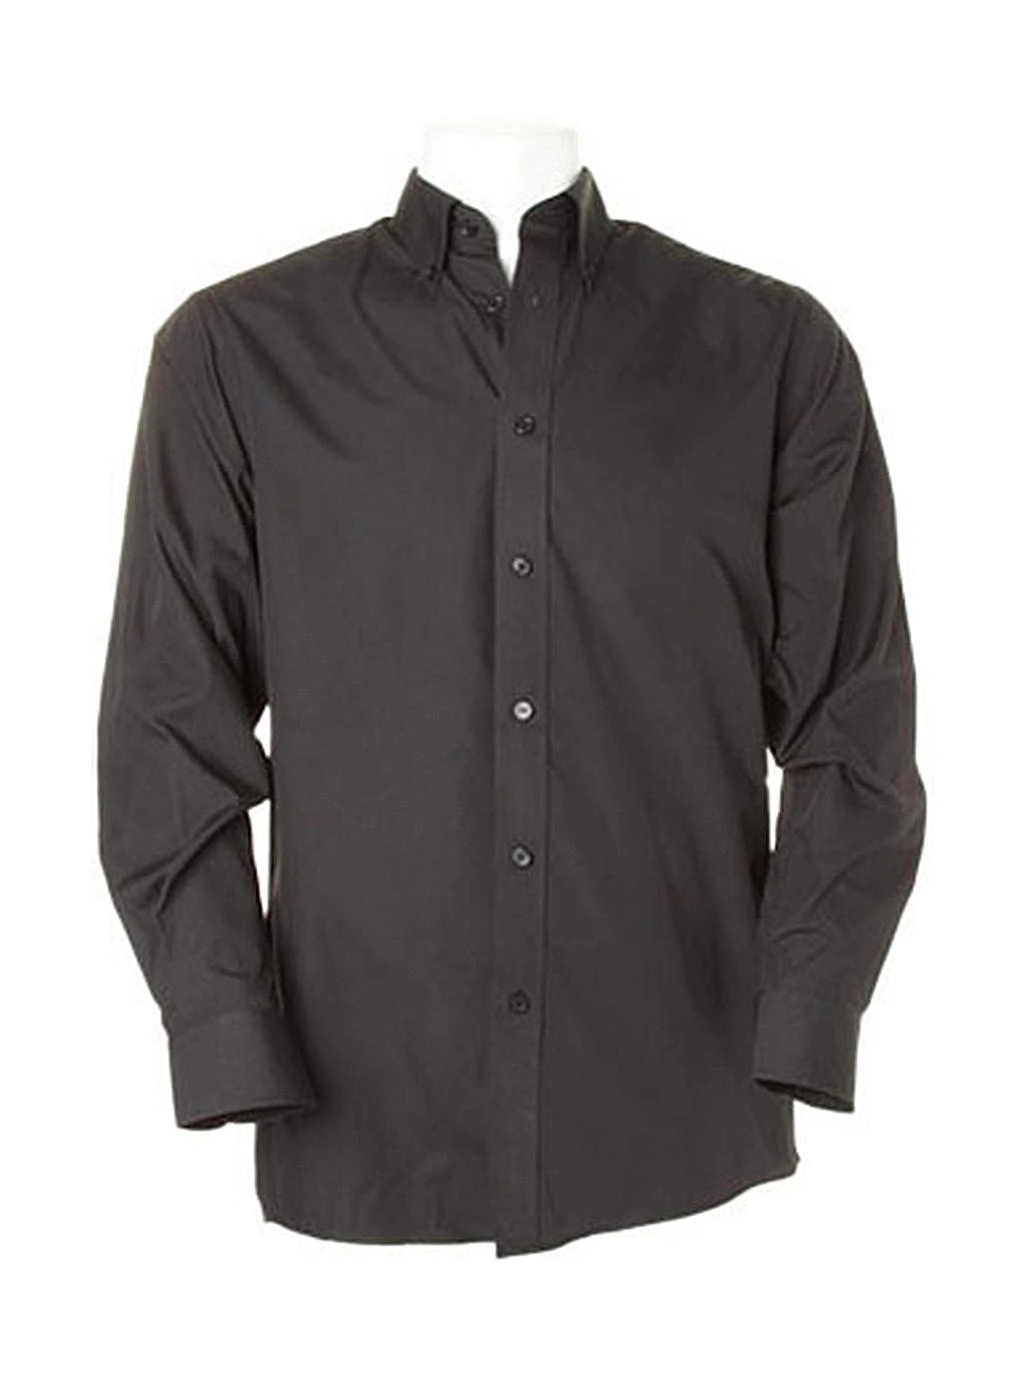 Classic Fit Workforce Shirt zum Besticken und Bedrucken in der Farbe Black mit Ihren Logo, Schriftzug oder Motiv.